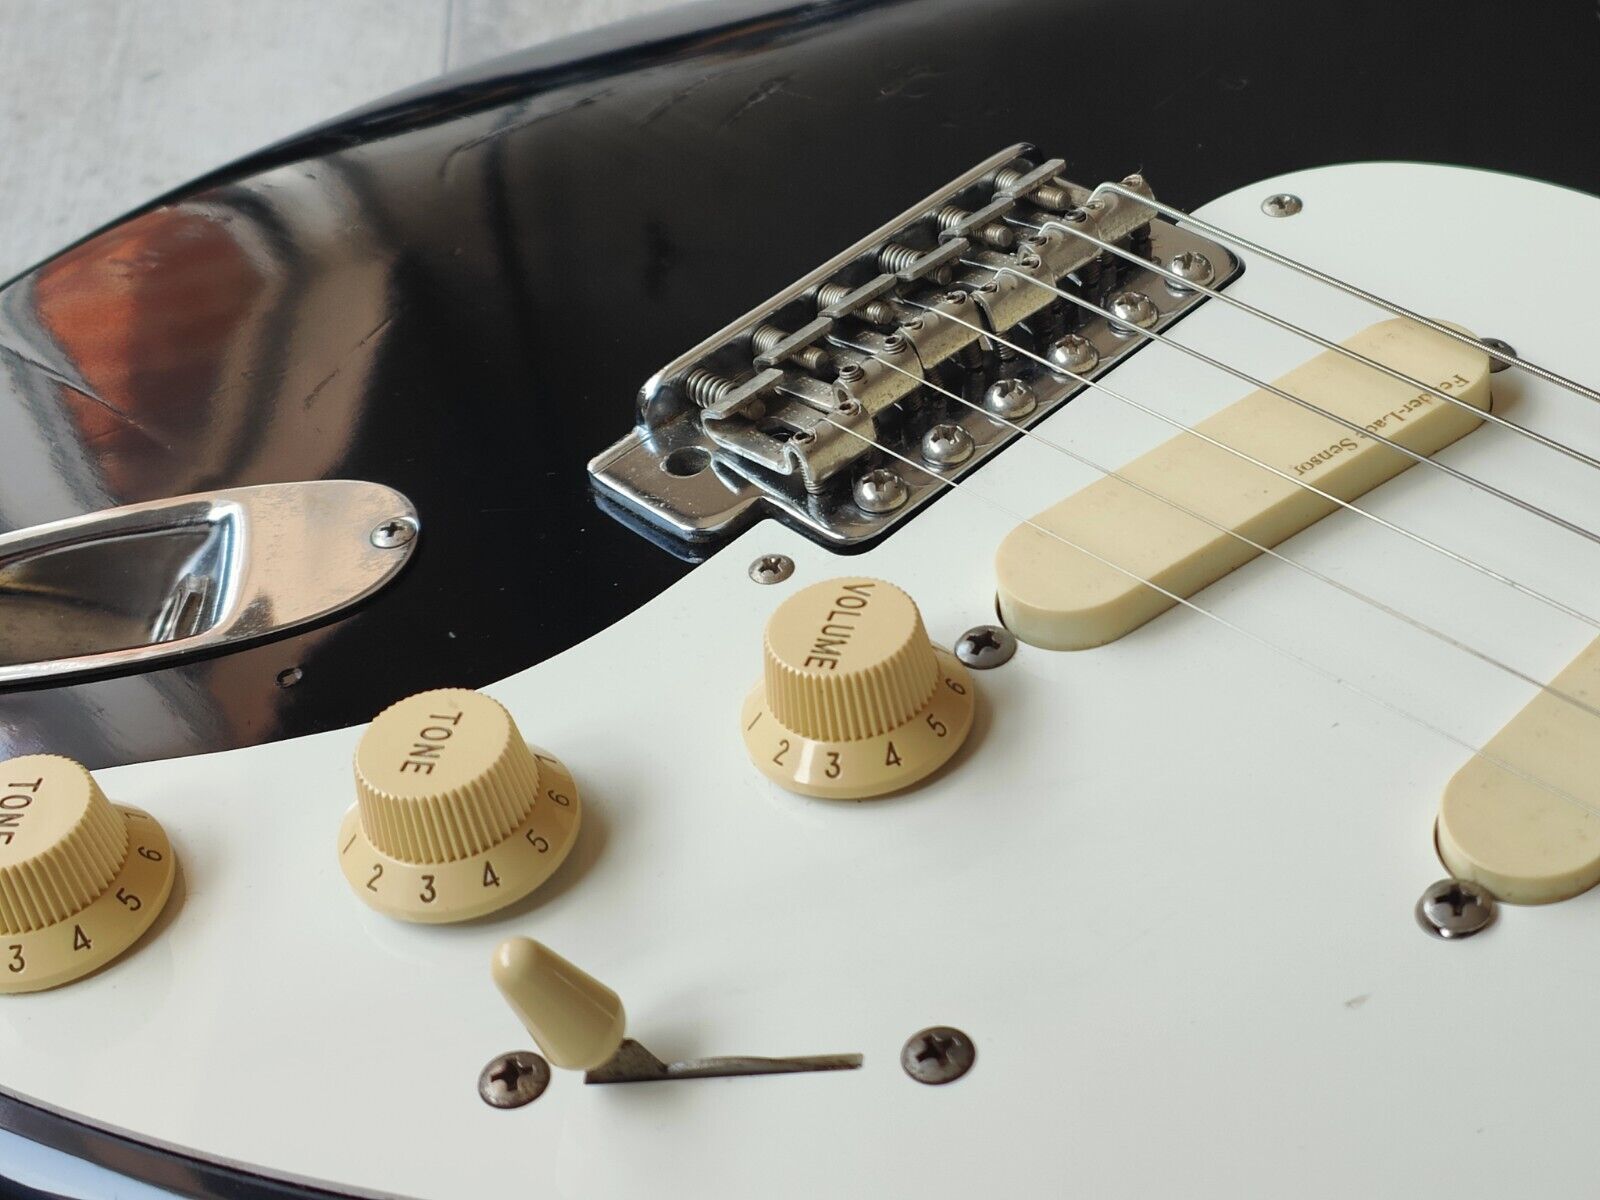 1989 Fender Japan ST54-85LS '54 Reissue "E Series" Clapton Stratocaster (Black)